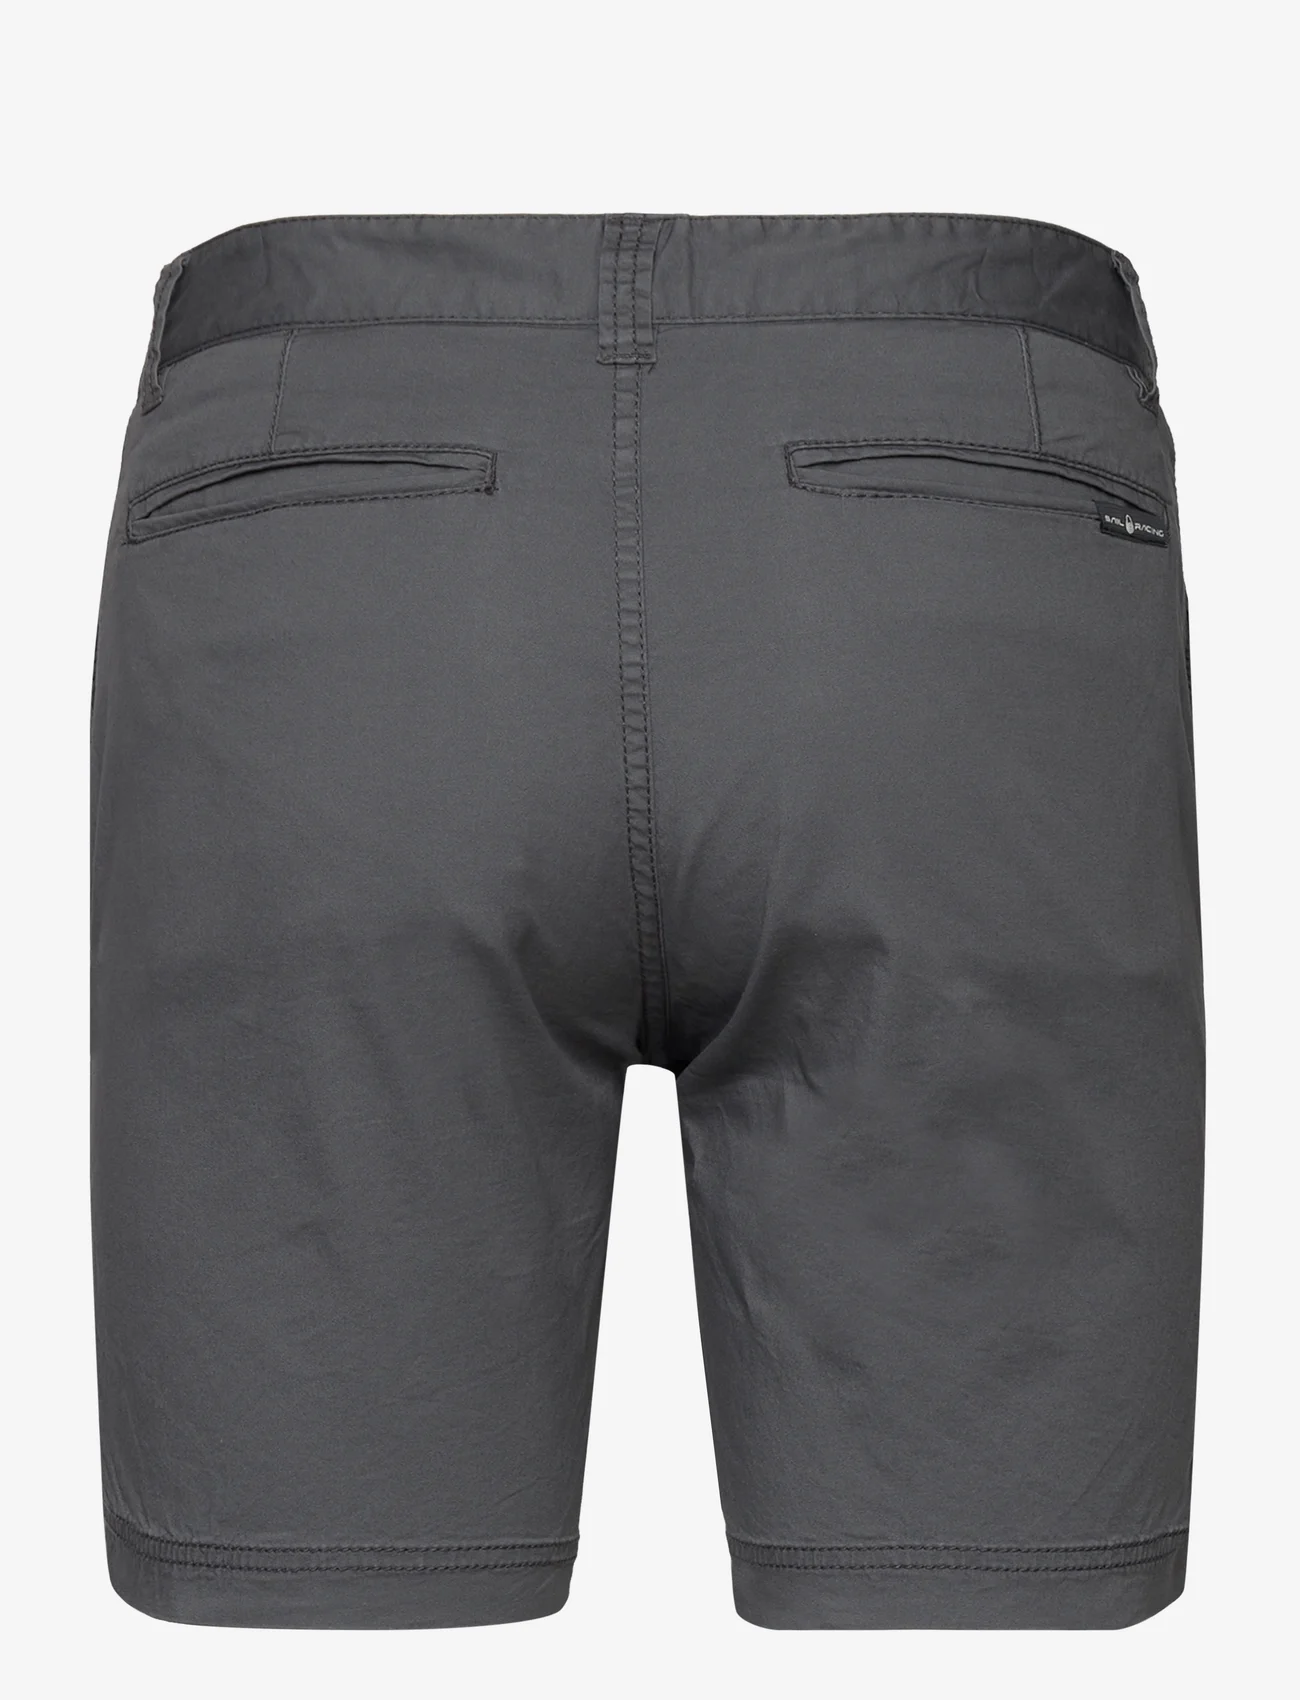 Sail Racing - HELMSMAN CHINO SHORTS - outdoor shorts - dk grey solid - 1